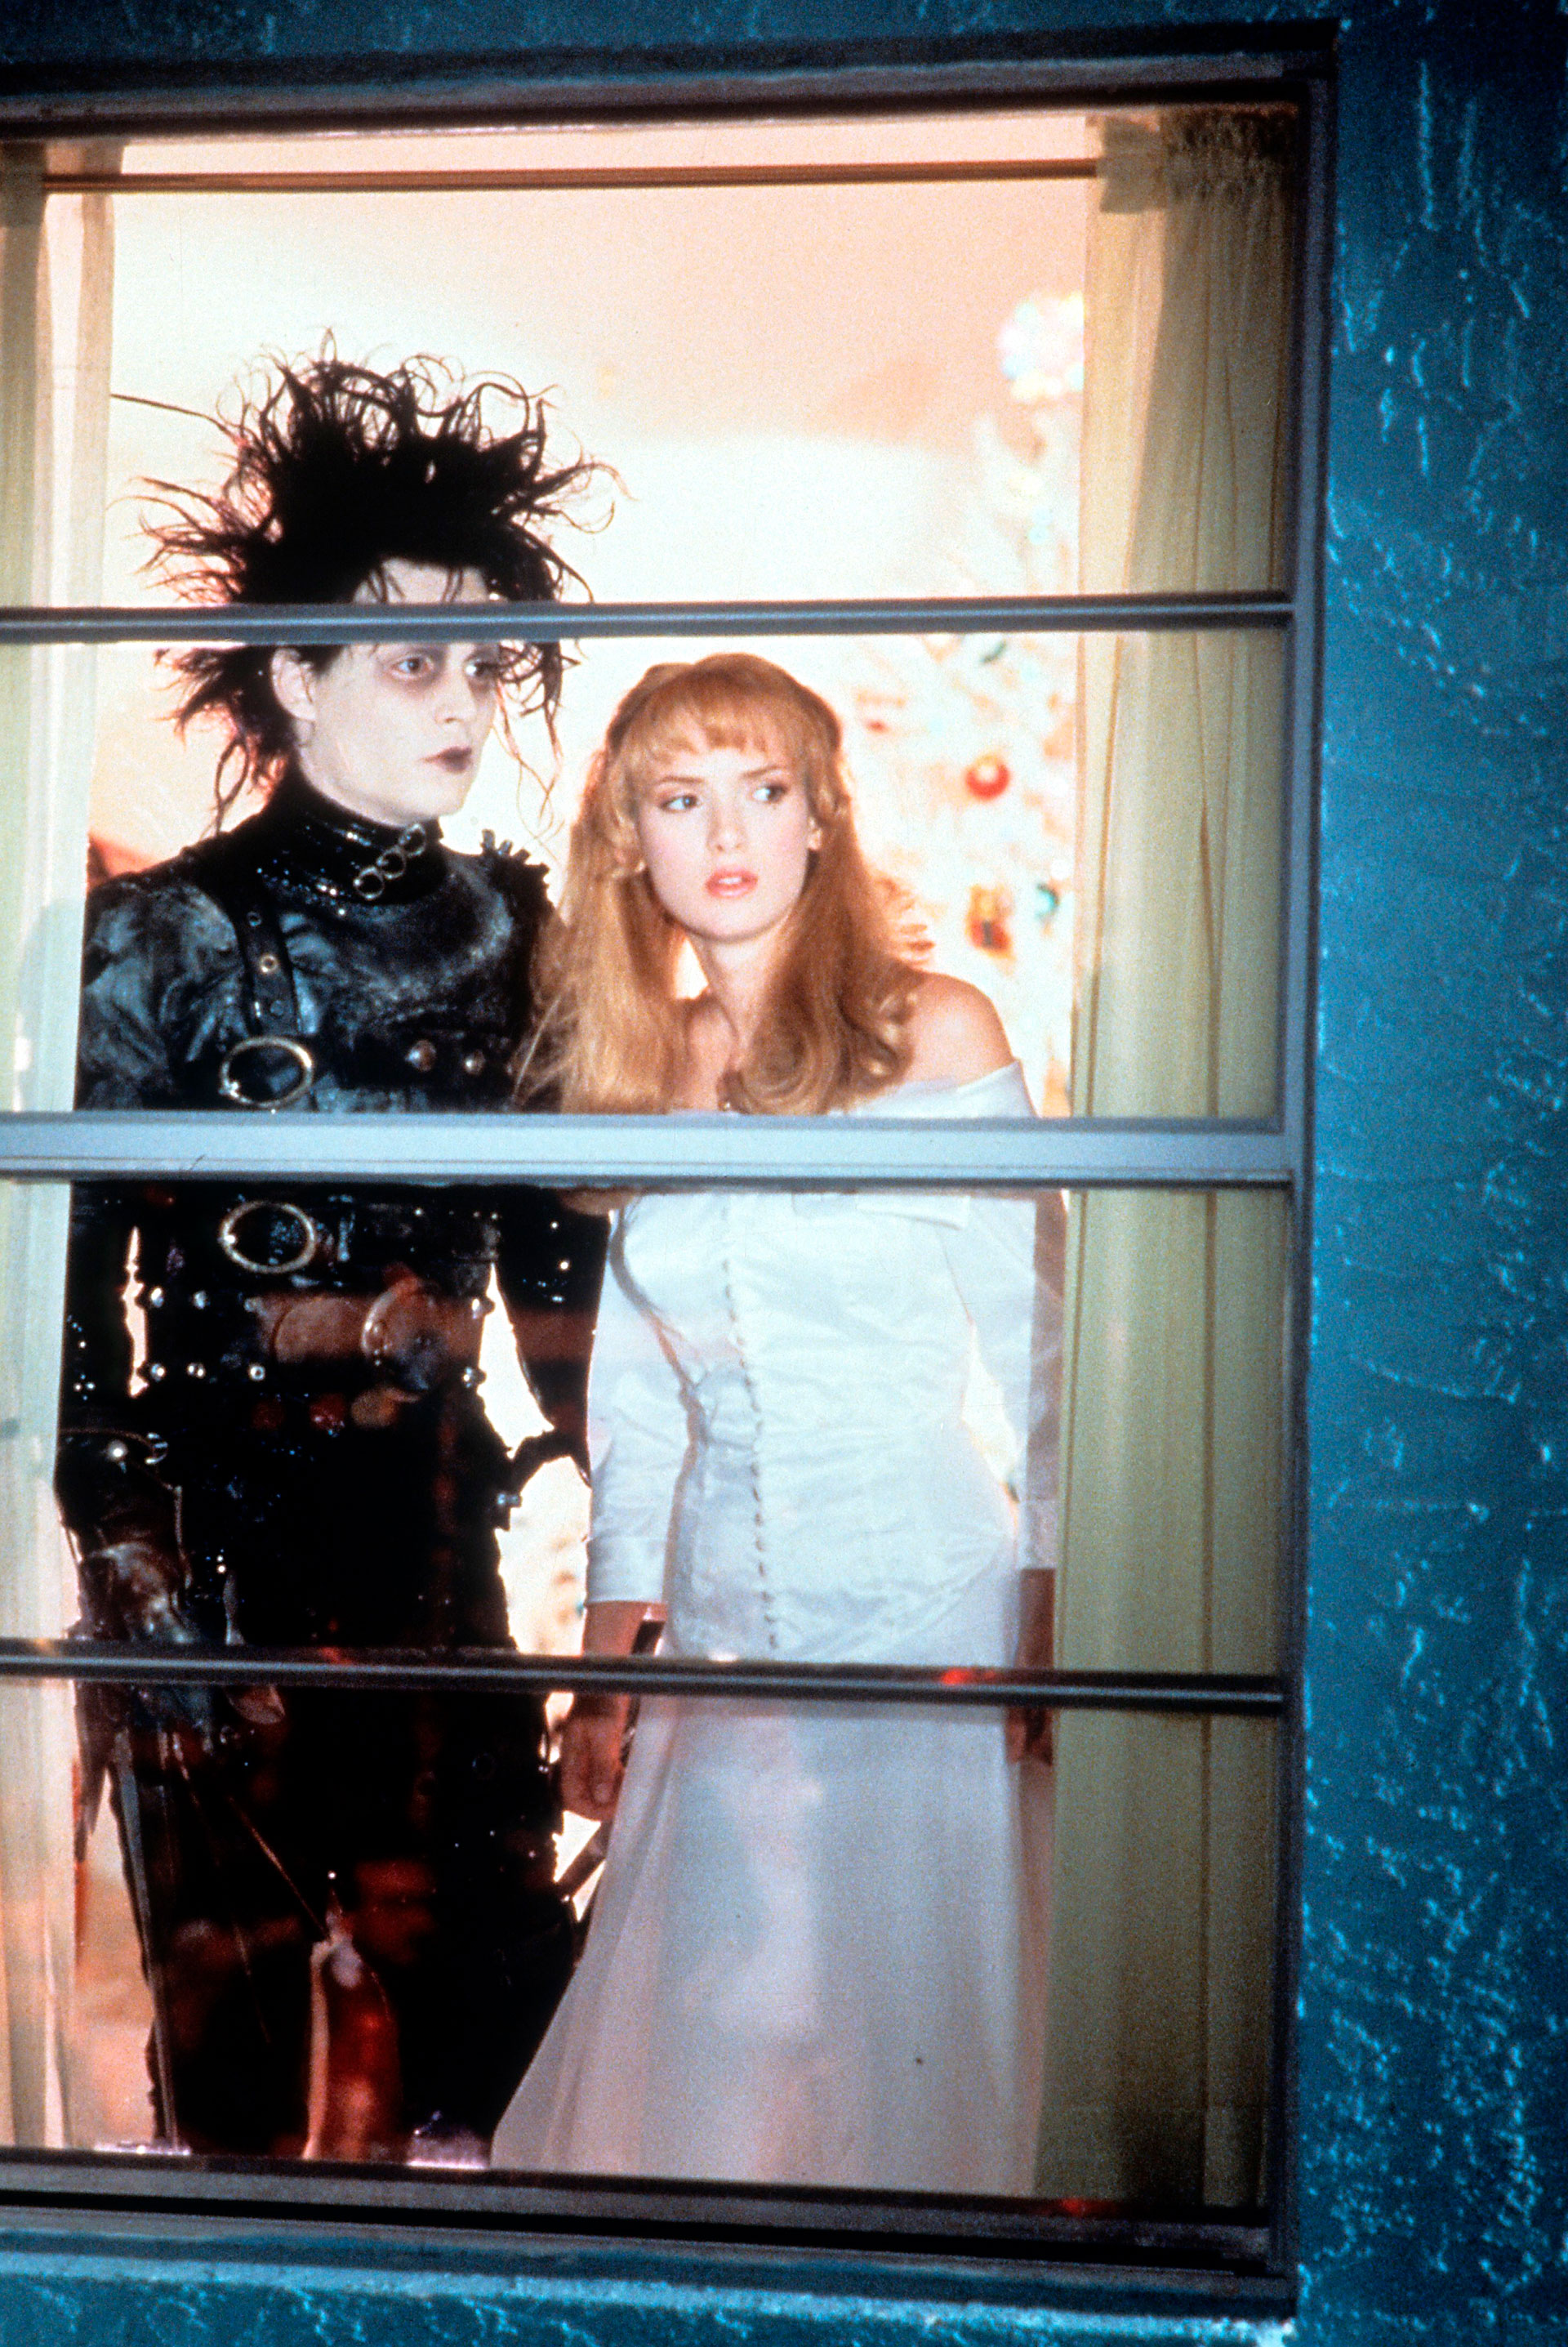 Johnny Depp y Winona Ryder en una escena de la película "El joven manos de tijera", 1990 (20th Century-Fox/Getty Images)
